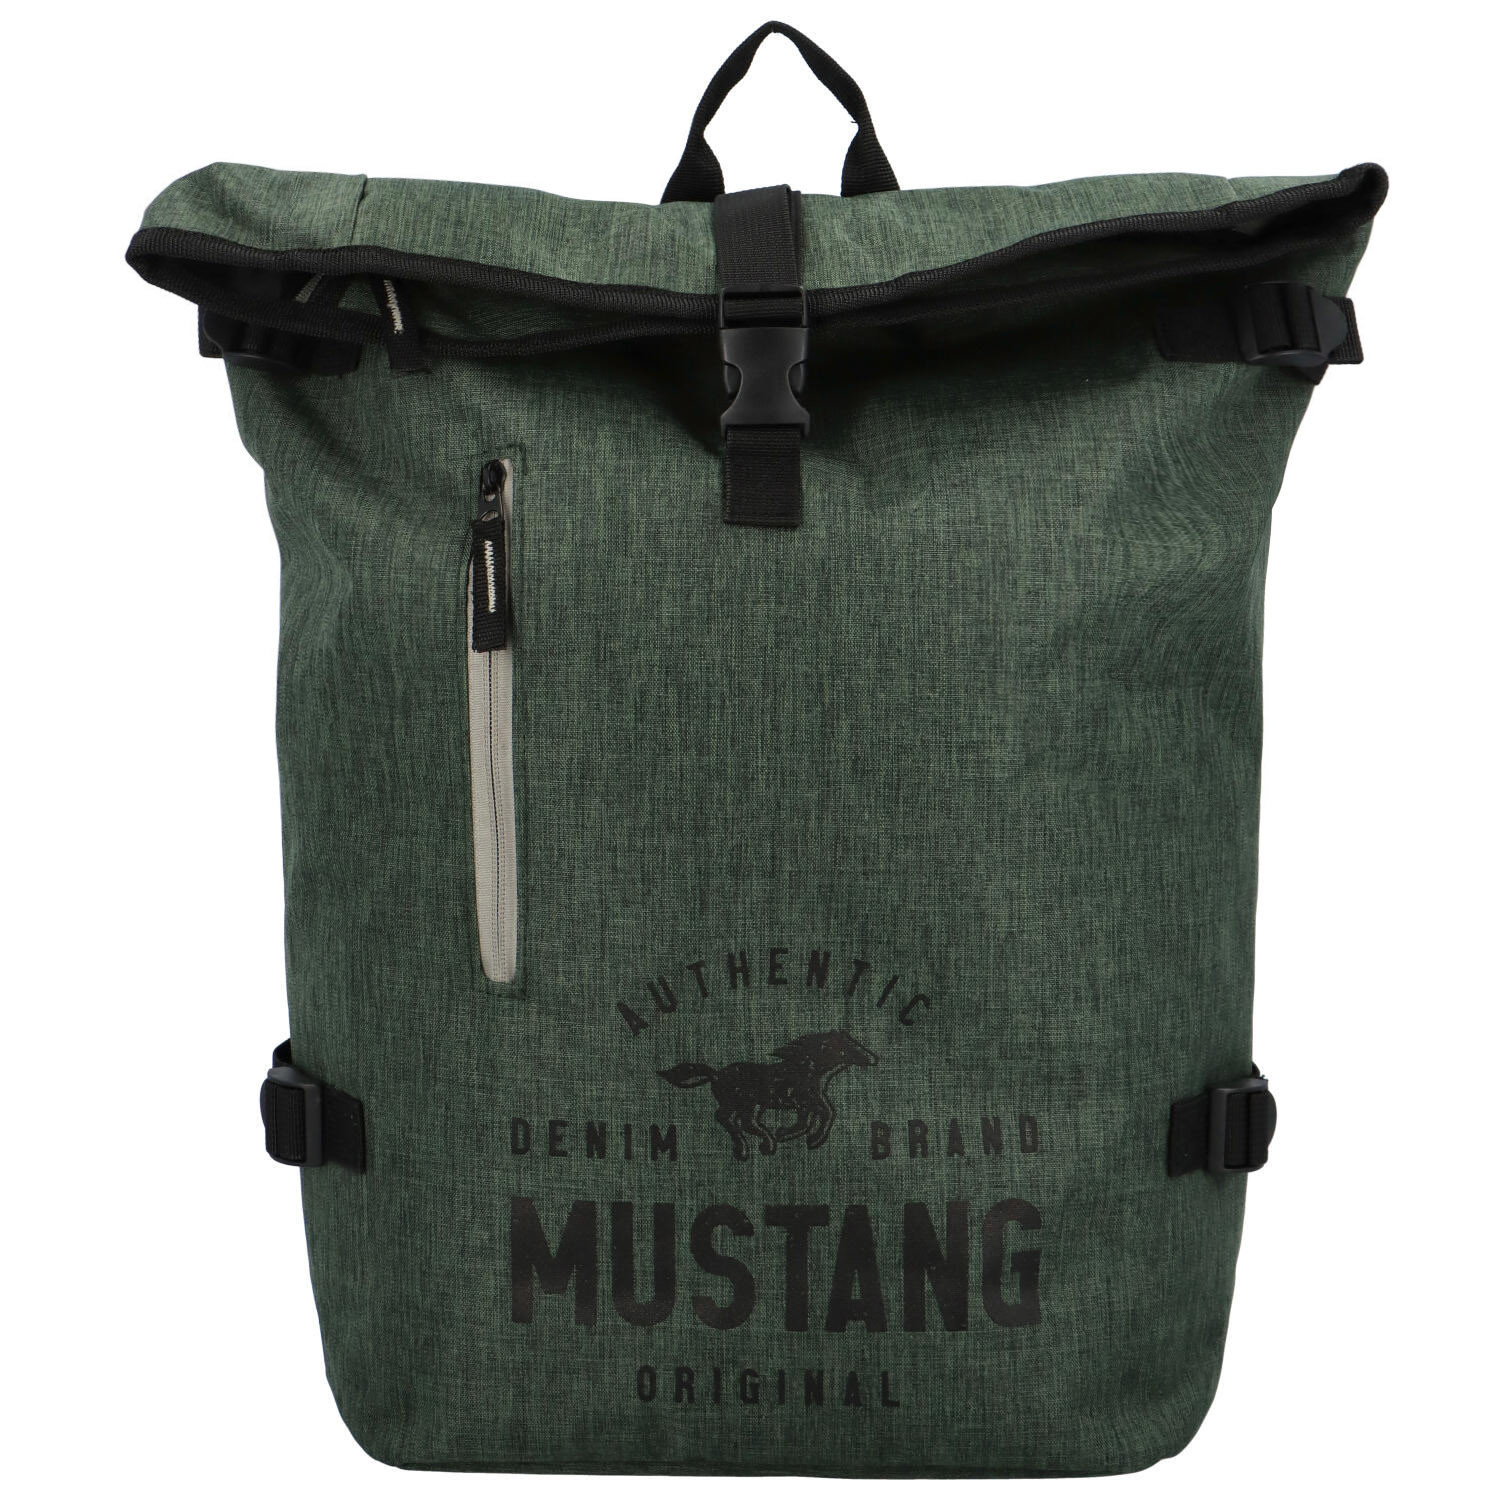 Velký batoh zelený - Mustang Lineah zelená